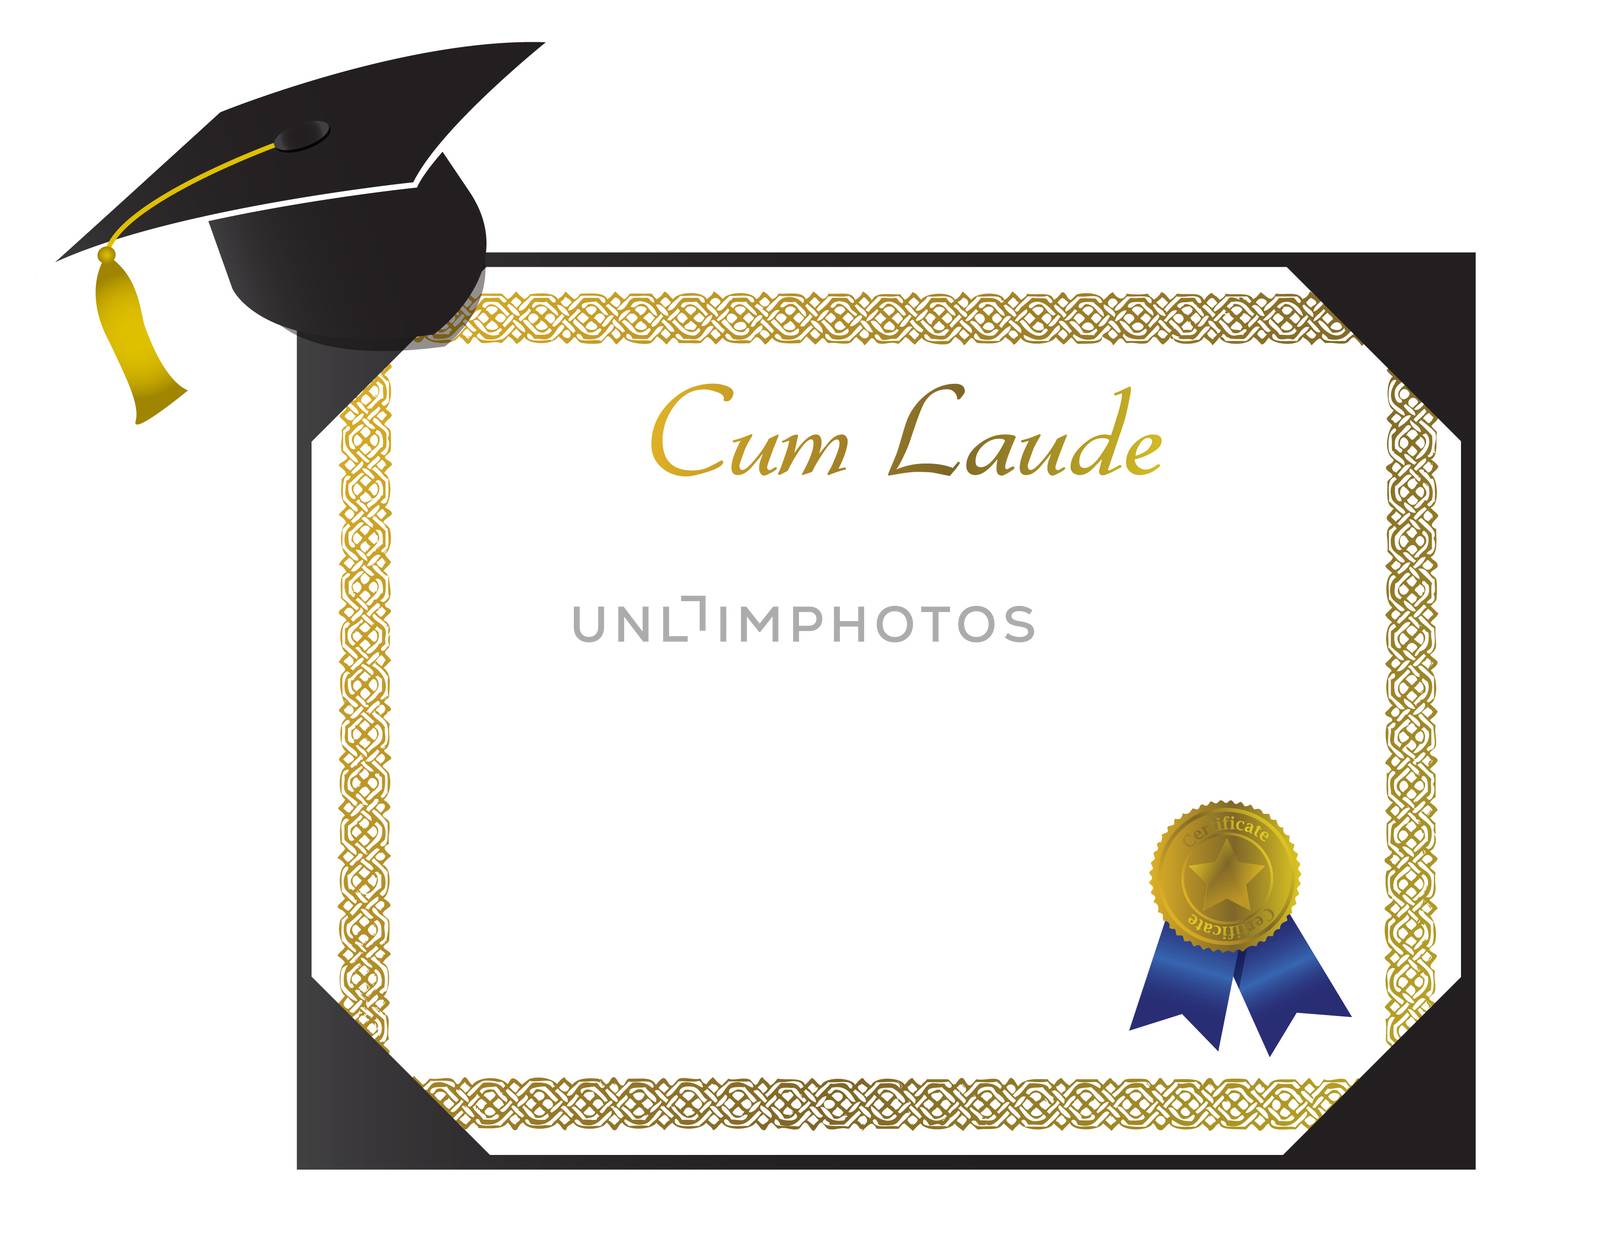 Cum Laude College Diploma with cap and tassel